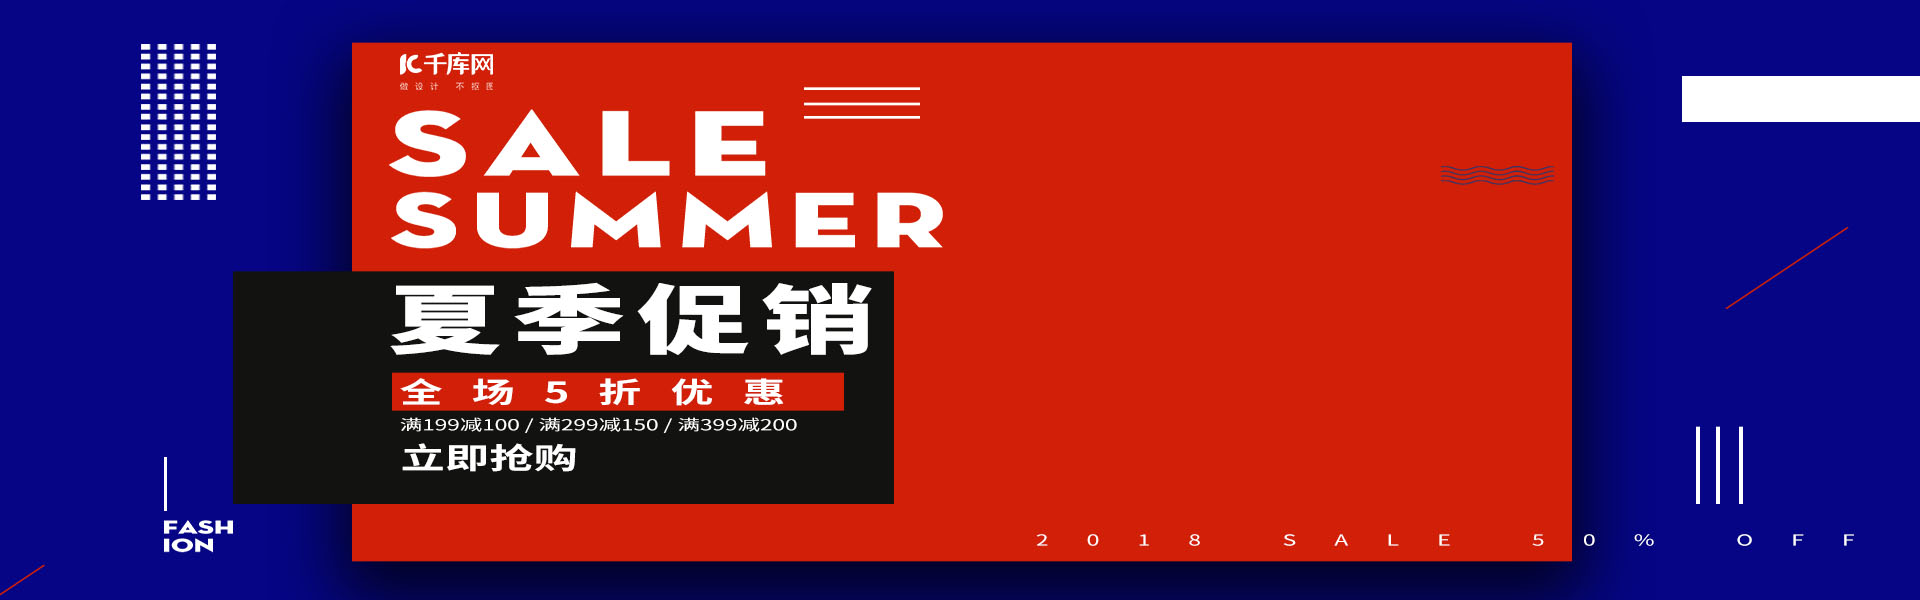 红蓝色欧美风大气夏季促销服装女装banner图片